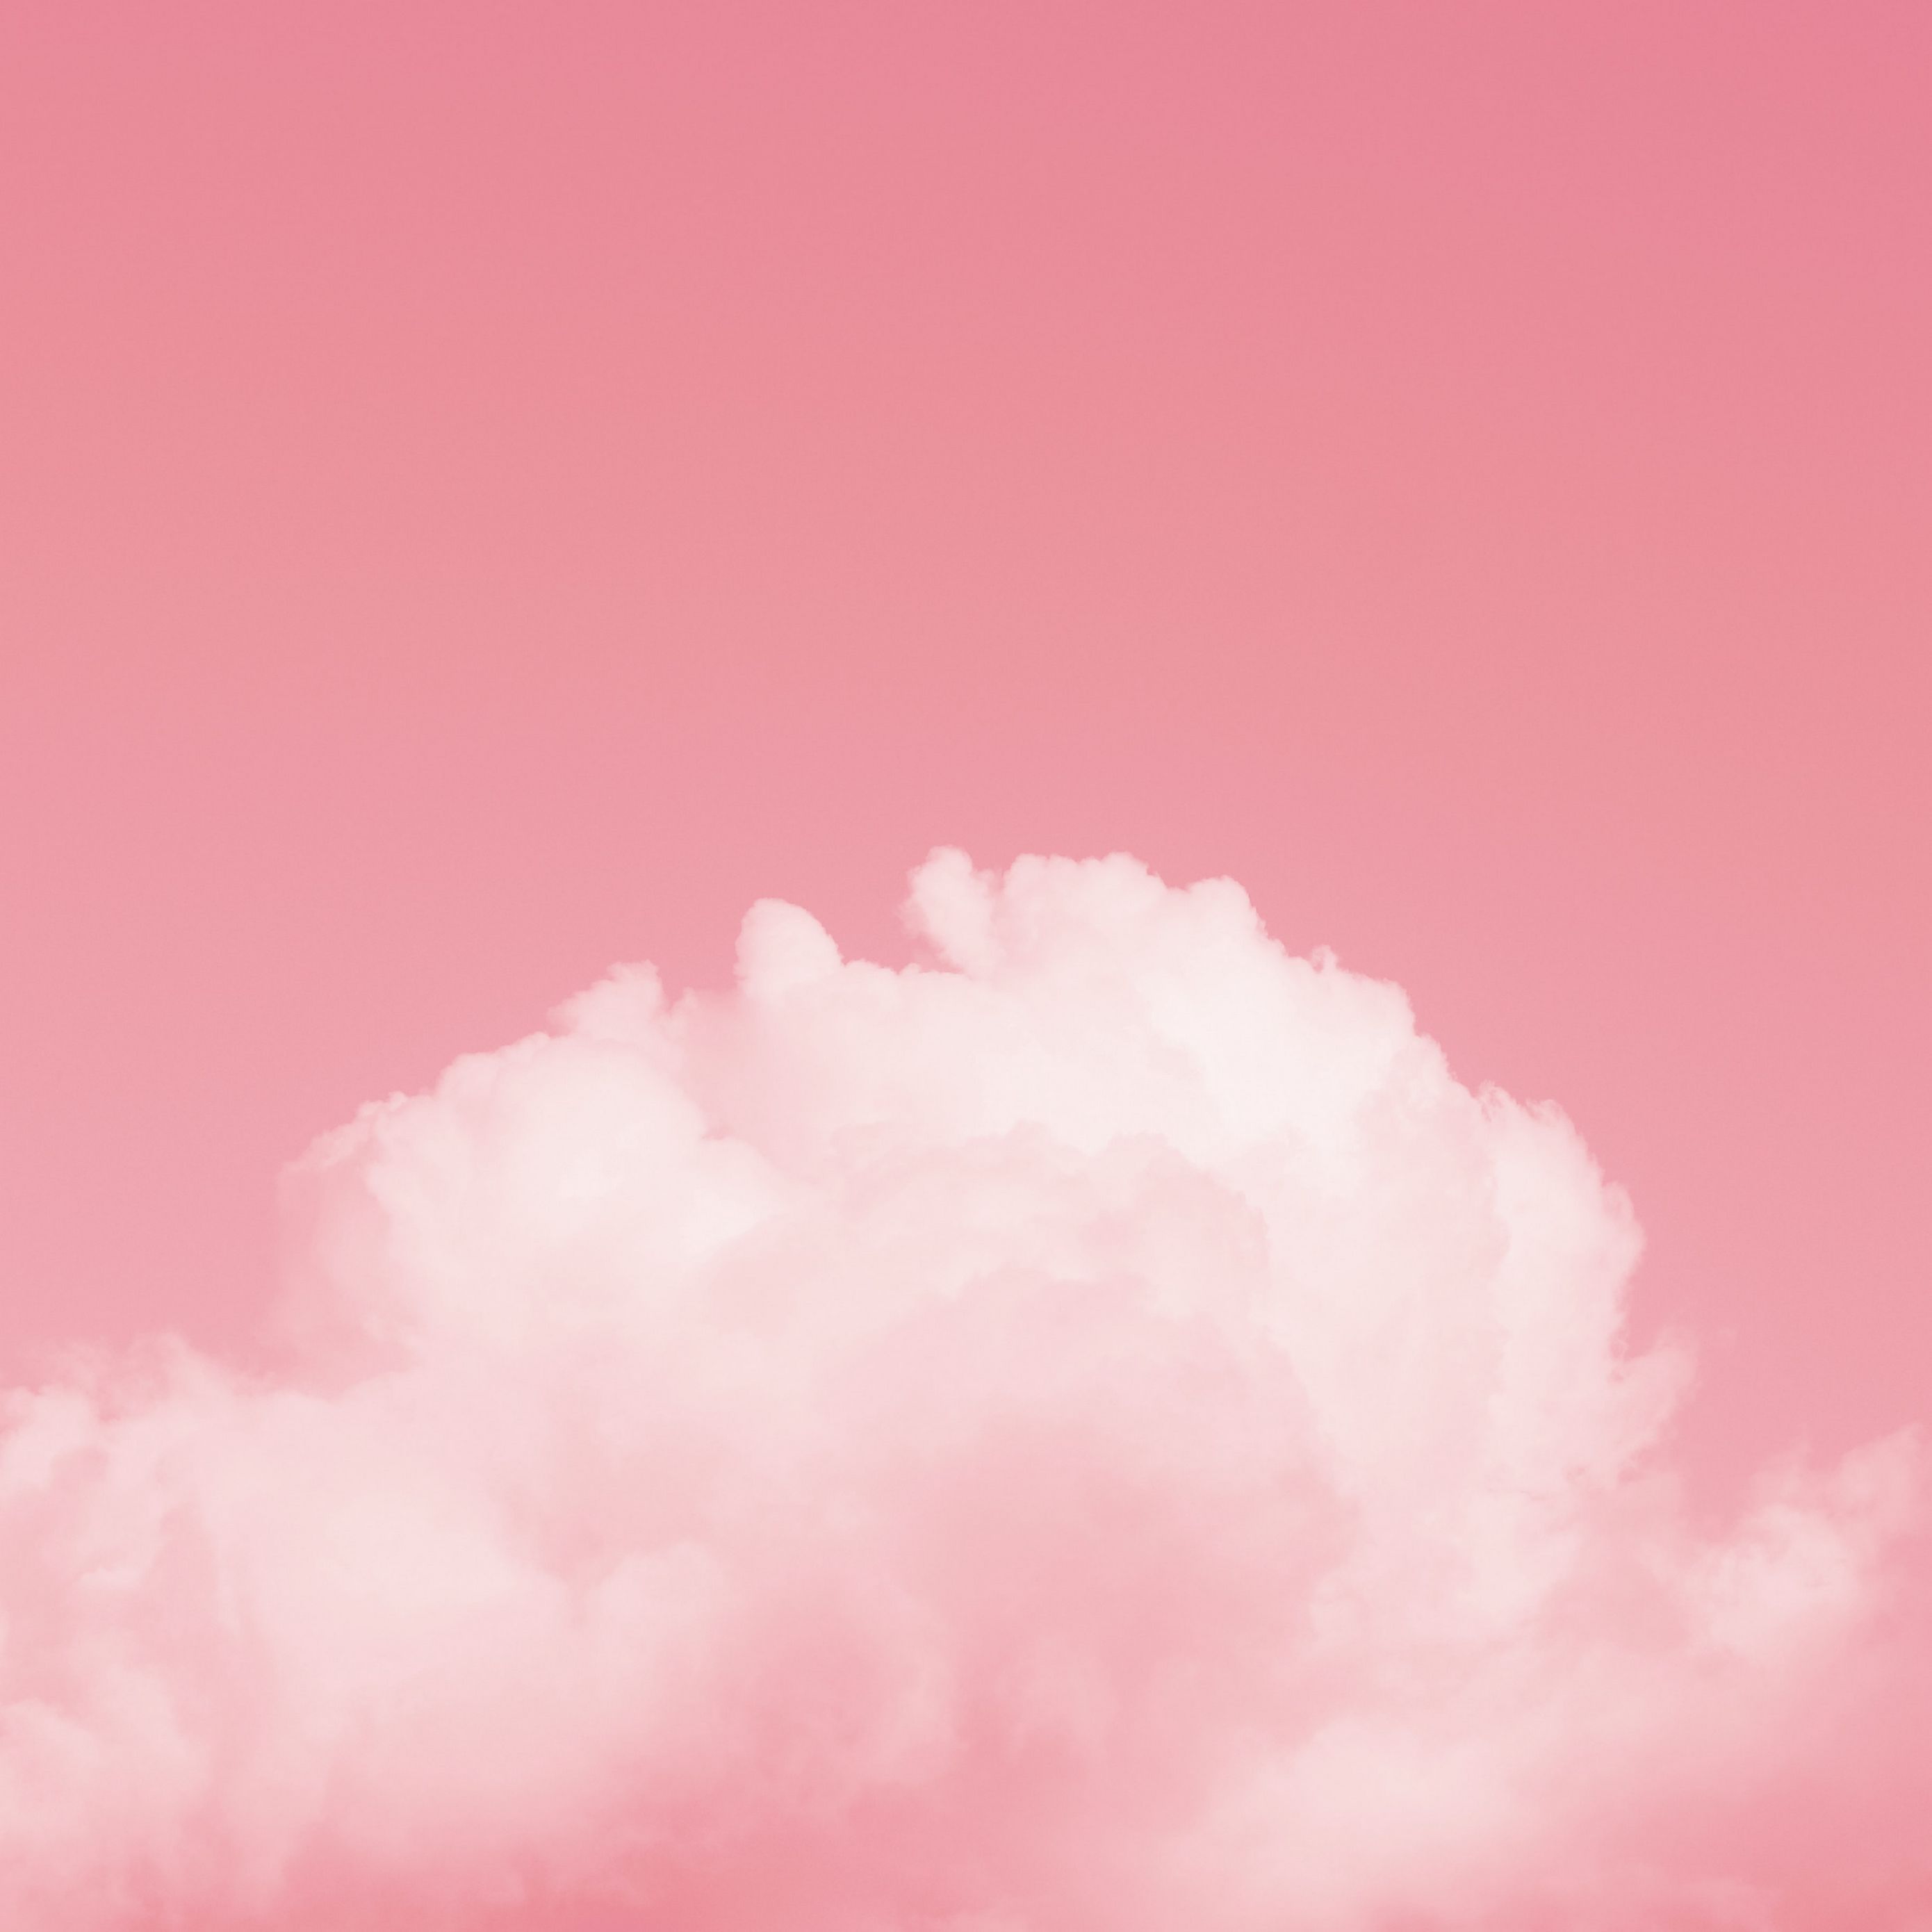 Tải ngay hình nền đám mây, bầu trời màu hồng kích thước 2780x2780 cho iPad để trải nghiệm một không gian yên bình, ấm áp ngay trên màn hình thiết bị của bạn. Không chỉ đẹp mắt, hình nền còn mang lại cảm giác dịu dàng, thư thái cho người dùng.